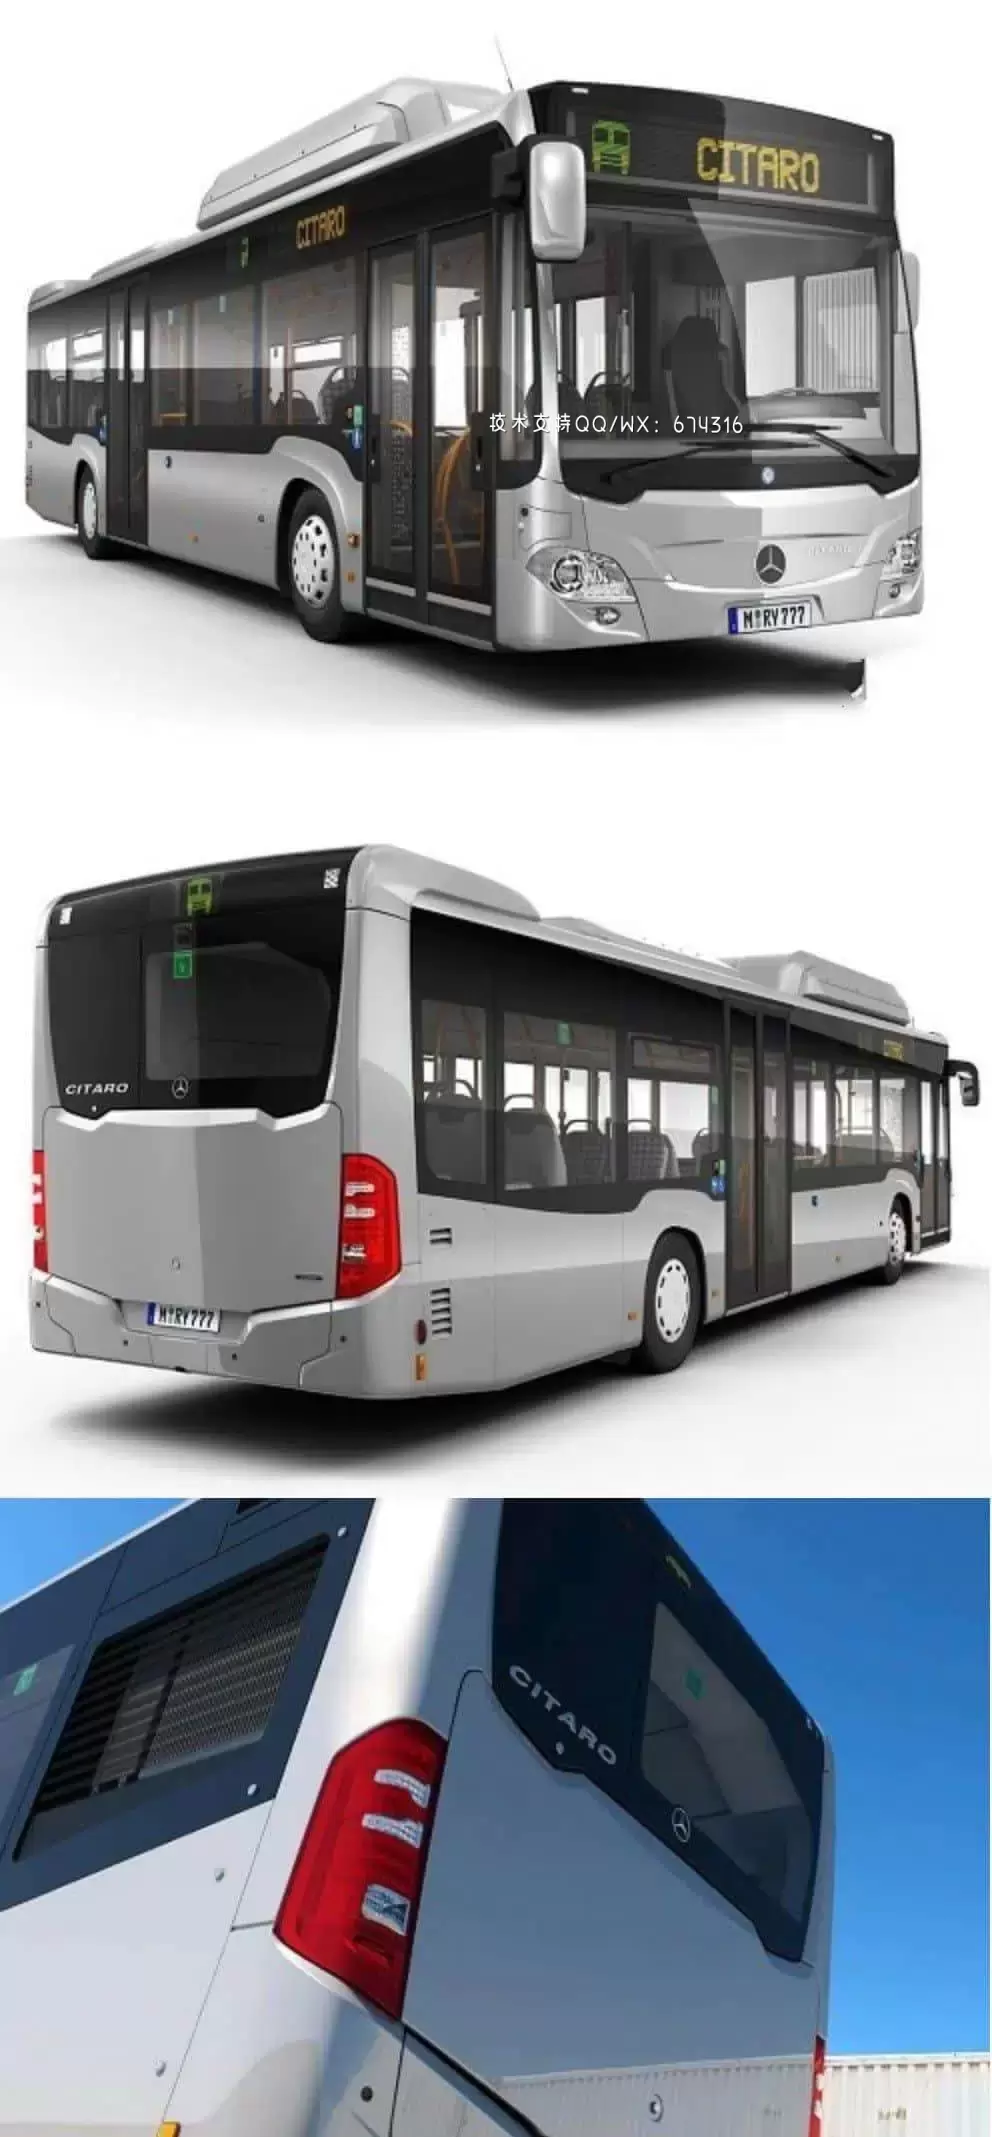 梅赛德斯奔驰 Citaro NGT 3D汽车大巴车公交车公共汽车模型下载 (MAX,OBJ,FBX,C4D)免费下载